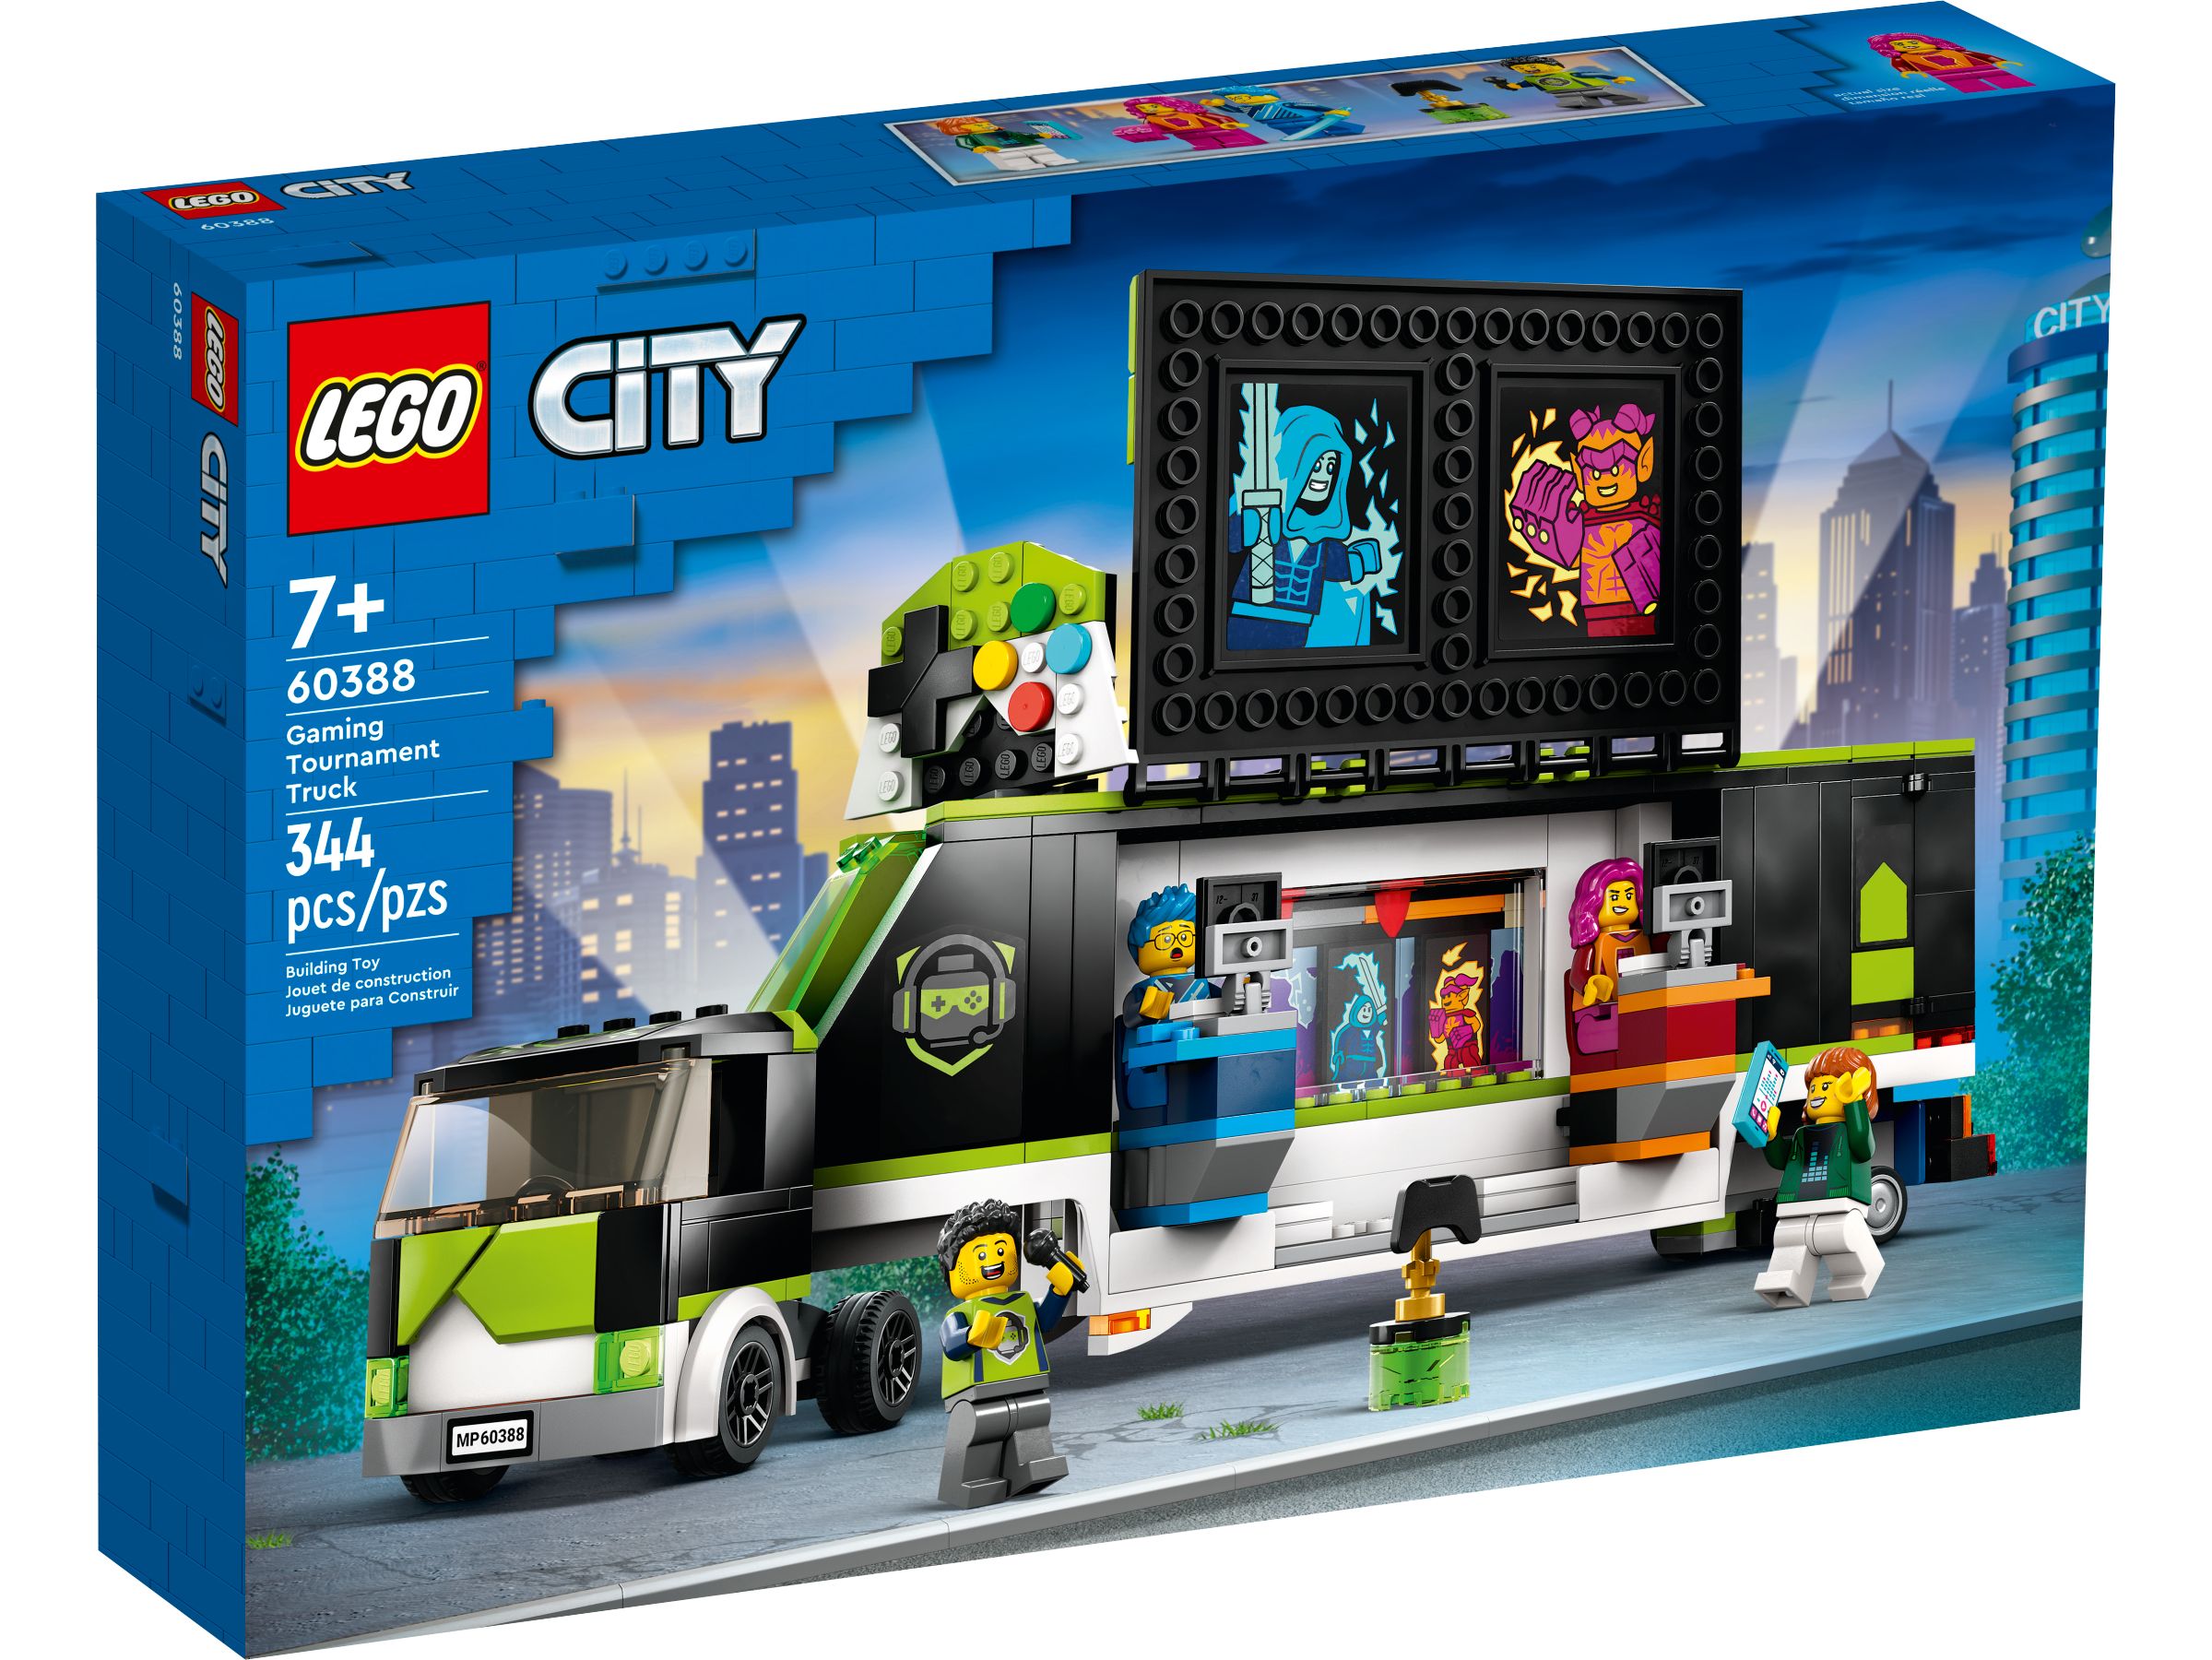 LEGO City 60388 Gaming Turnier Truck LEGO_60388_alt1.jpg